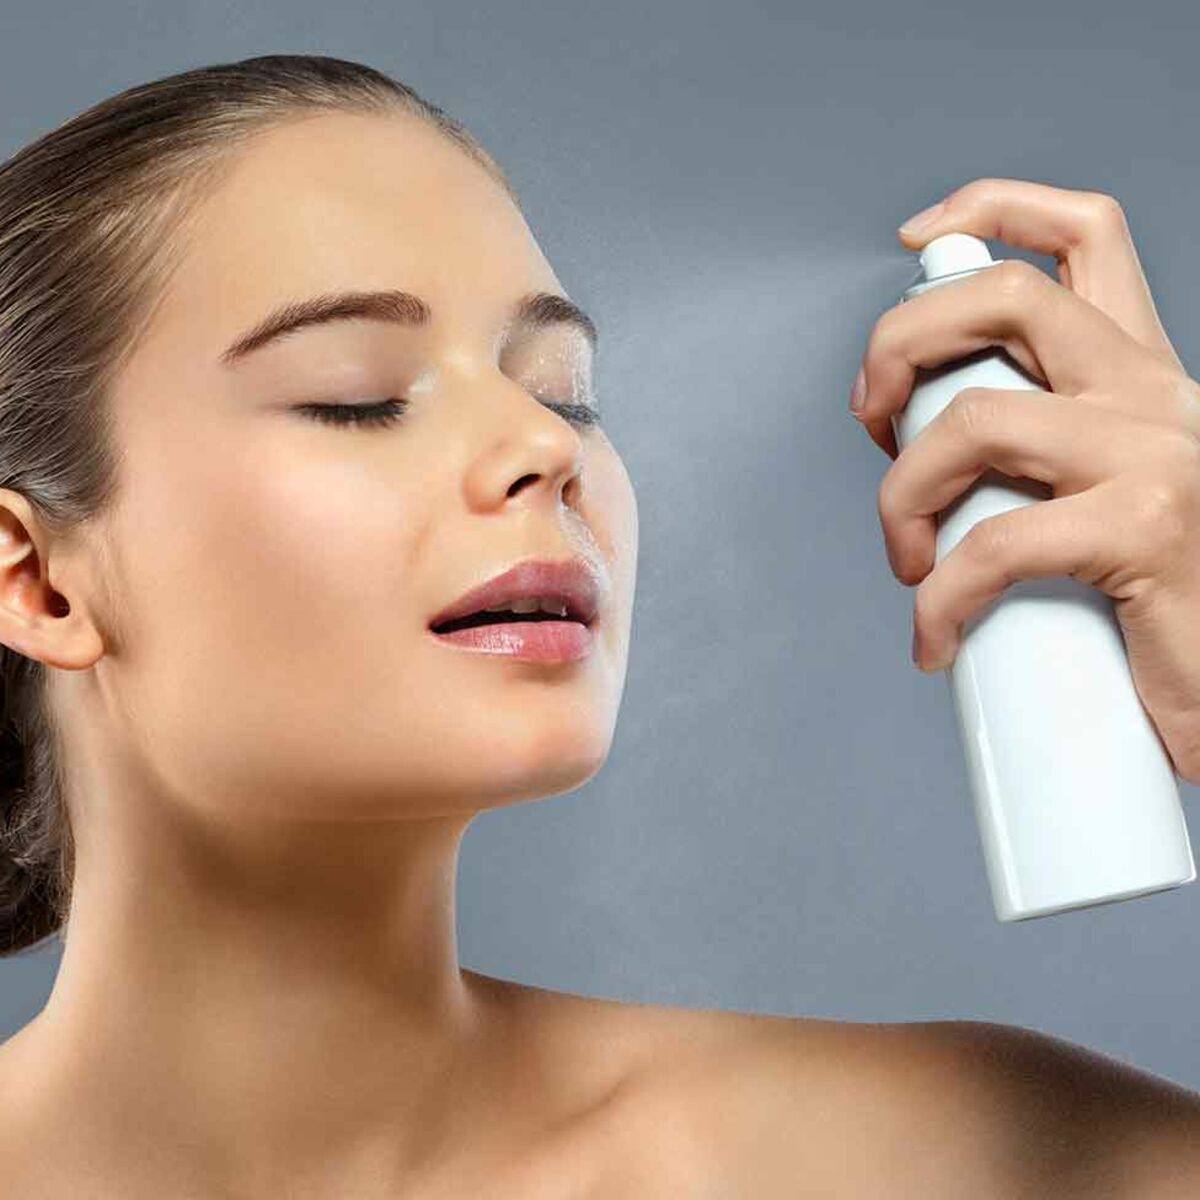 Spray fixateur : lequel choisir pour faire tenir son maquillage ?